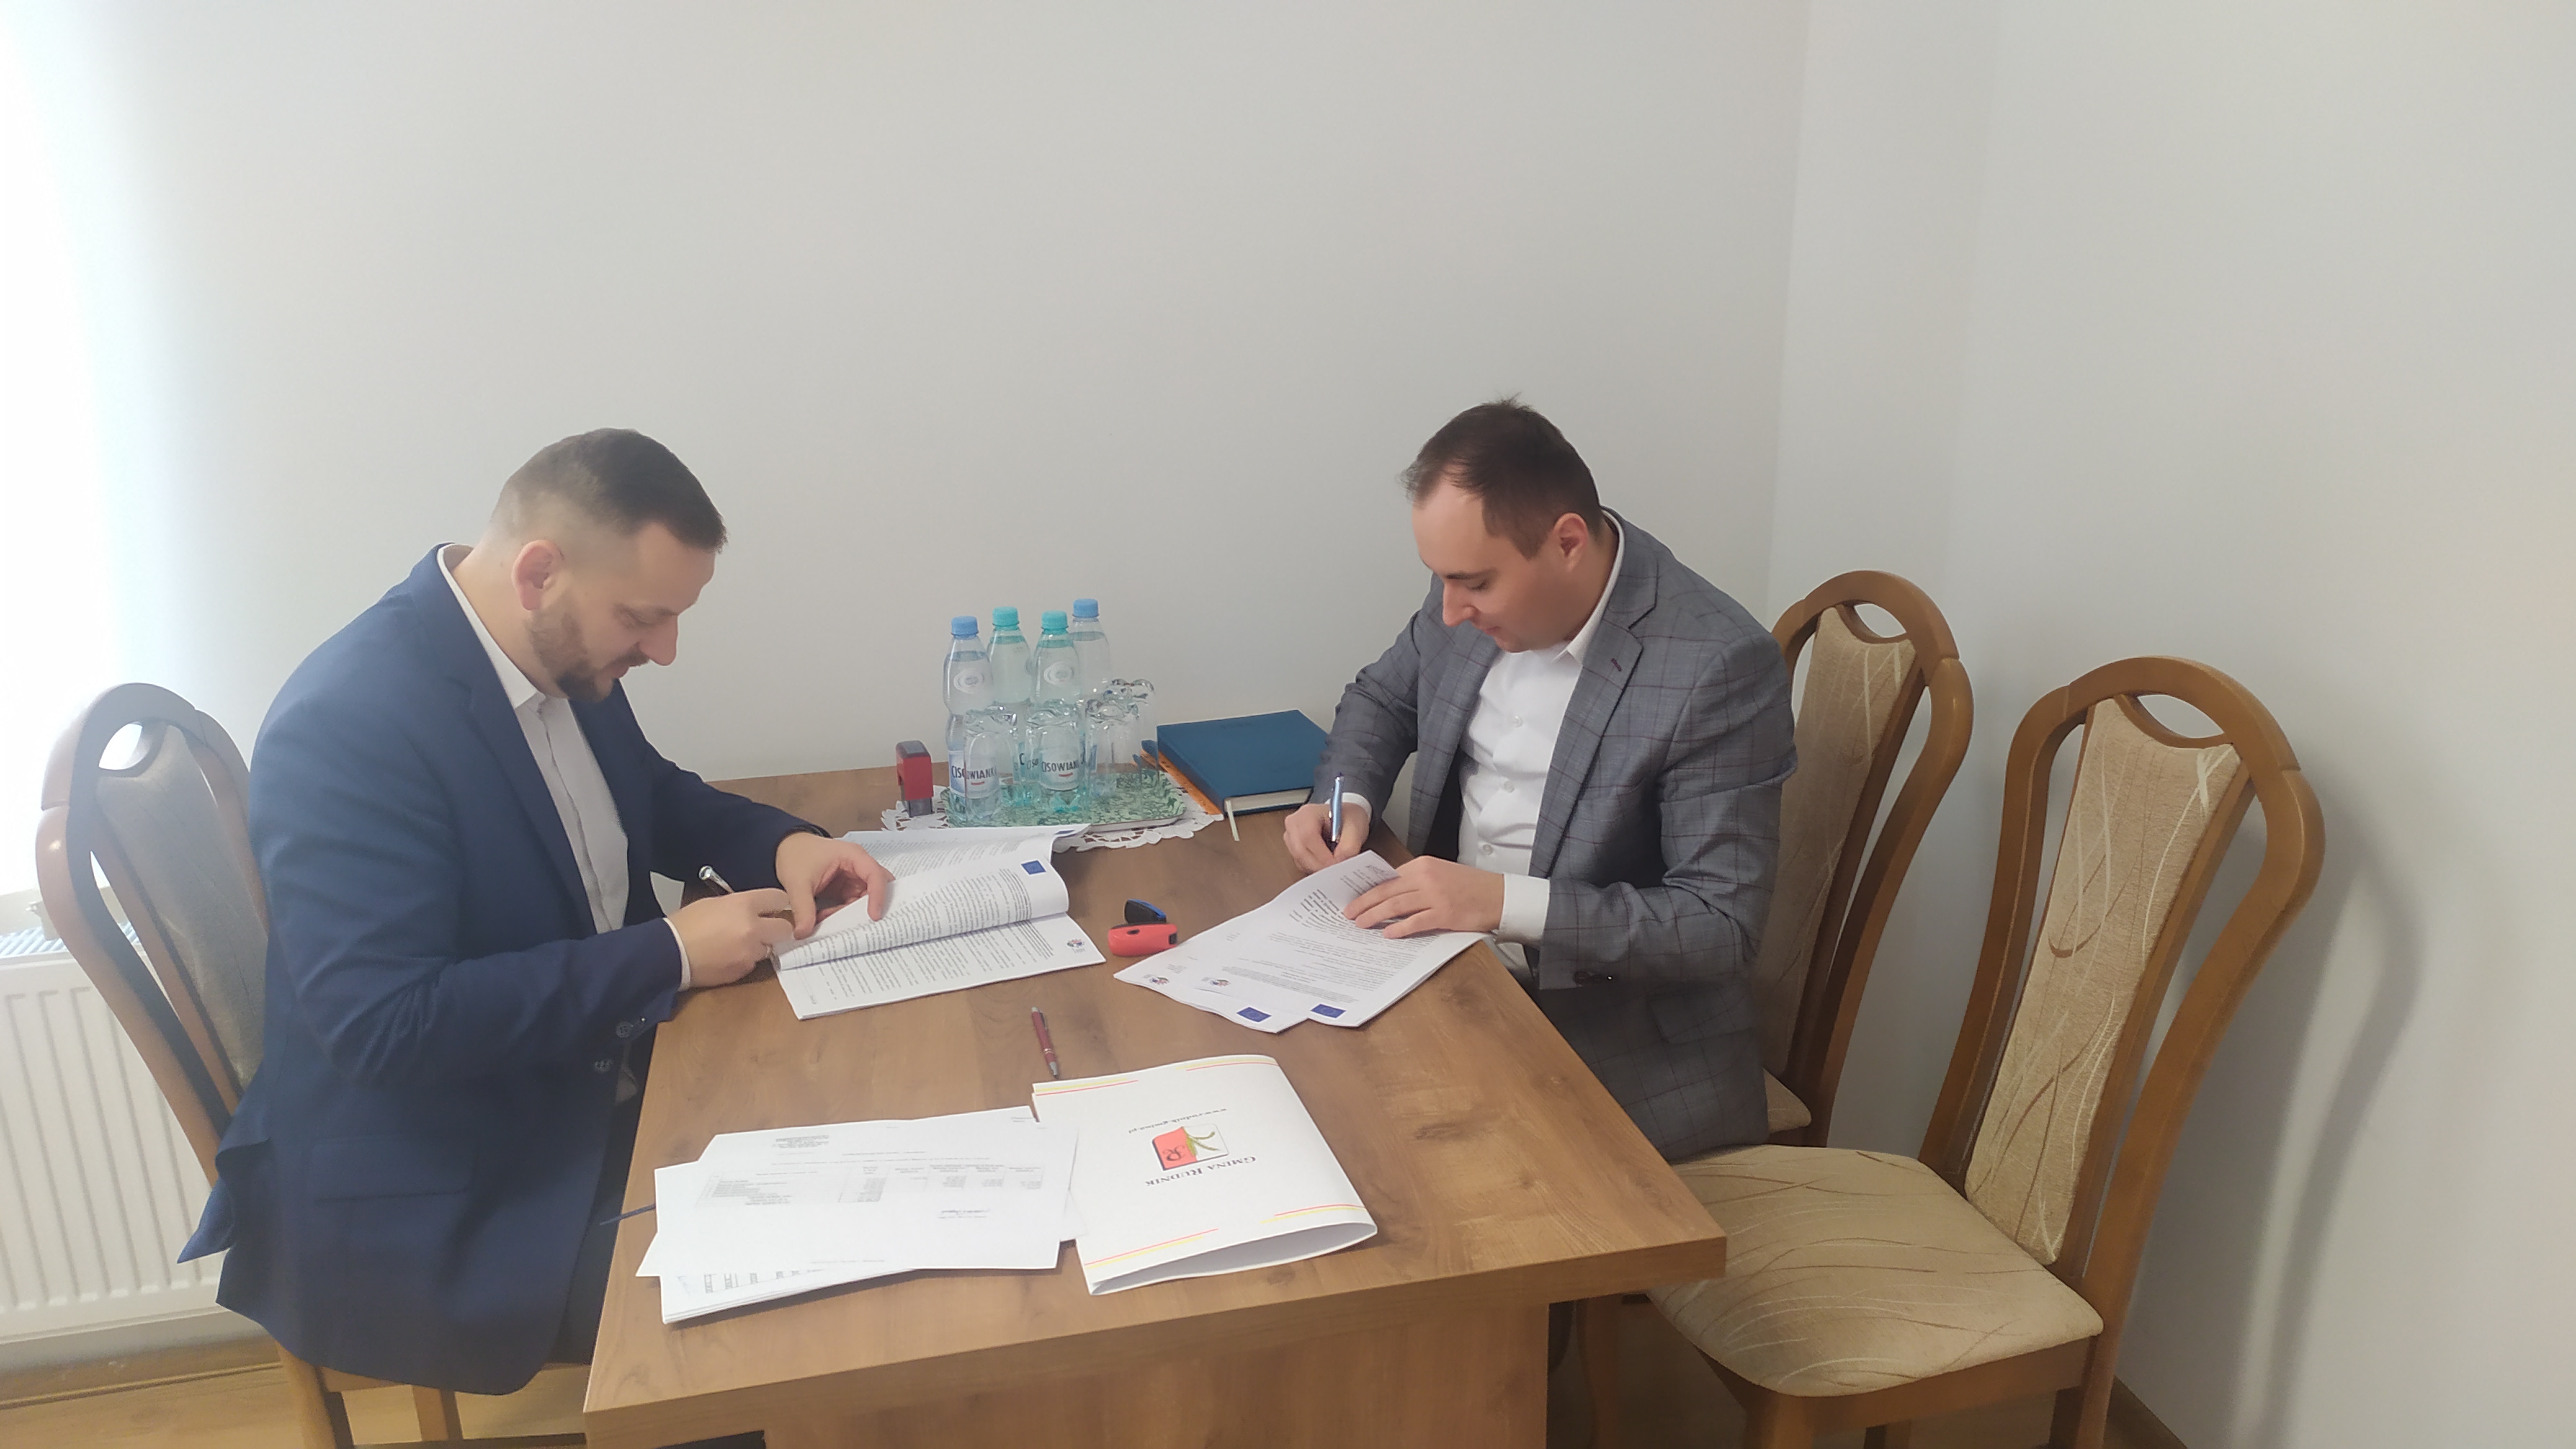 Podpisanie umowy na rozbudowę drogi w Maszowie. Wójt Gminy oraz prezes PRD przy biurku podpisują umowę.